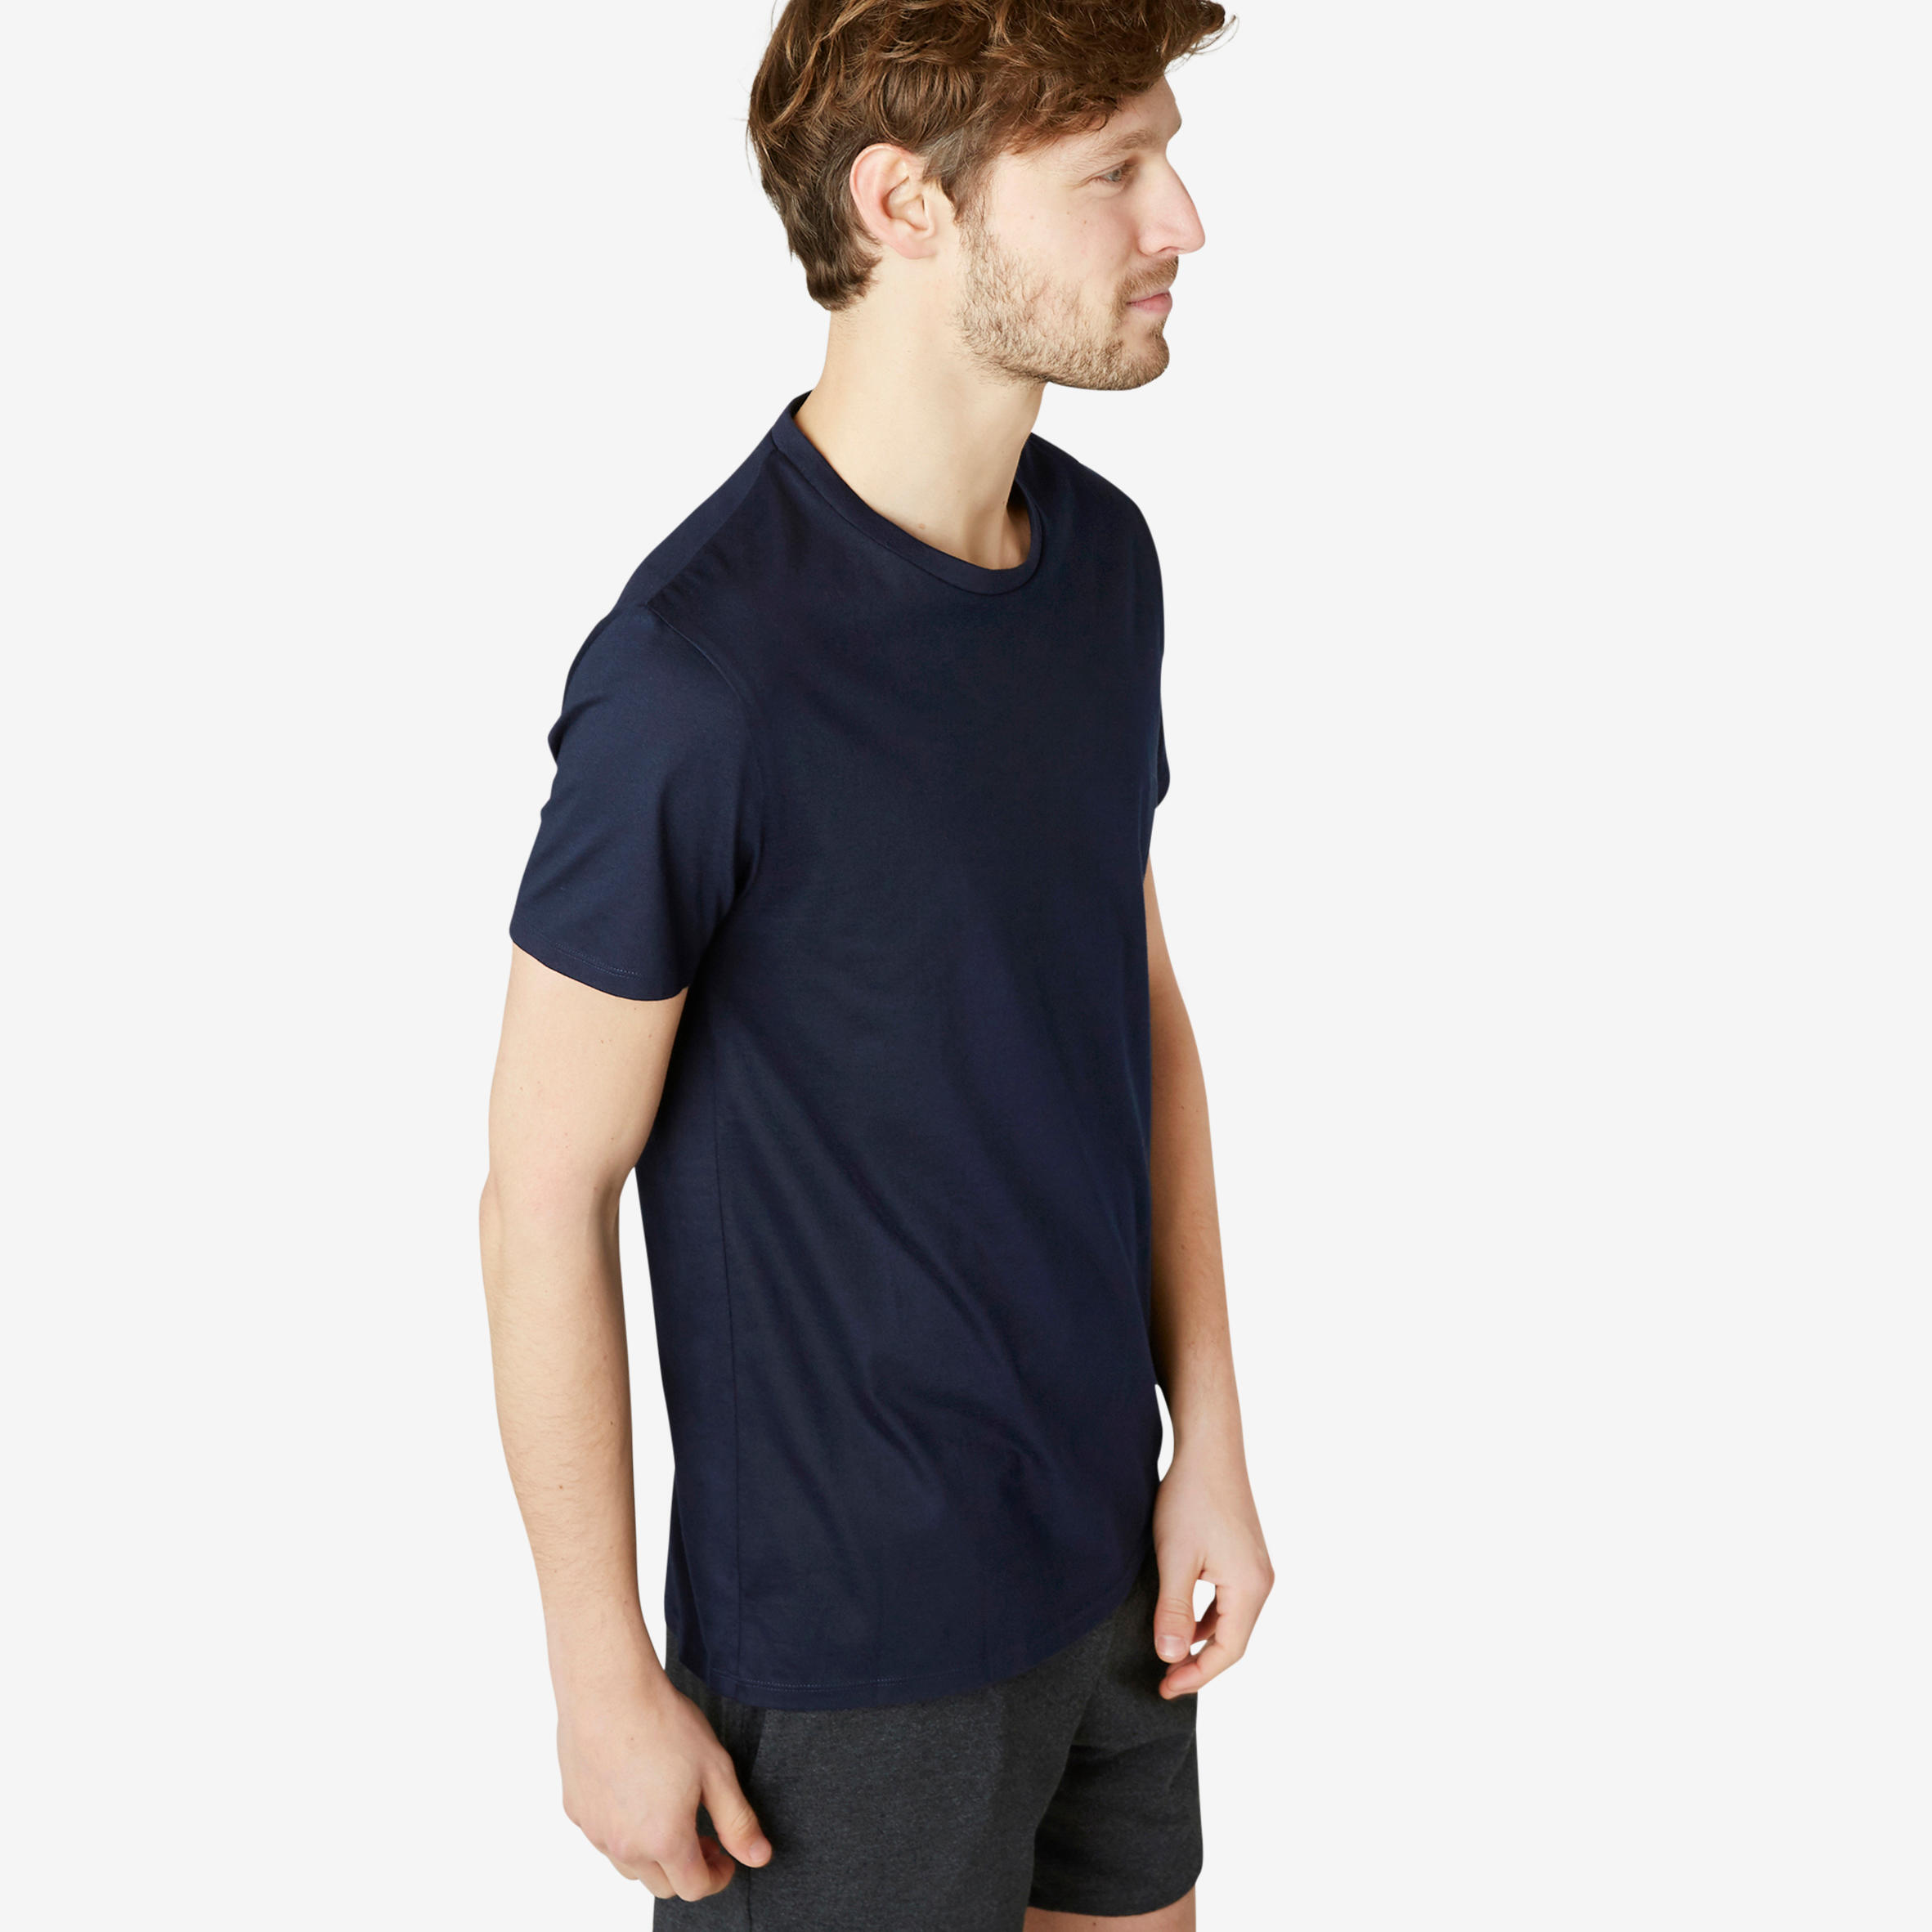 Men's Fitness T-Shirt Sportee 100 - Navy Blue 1/6